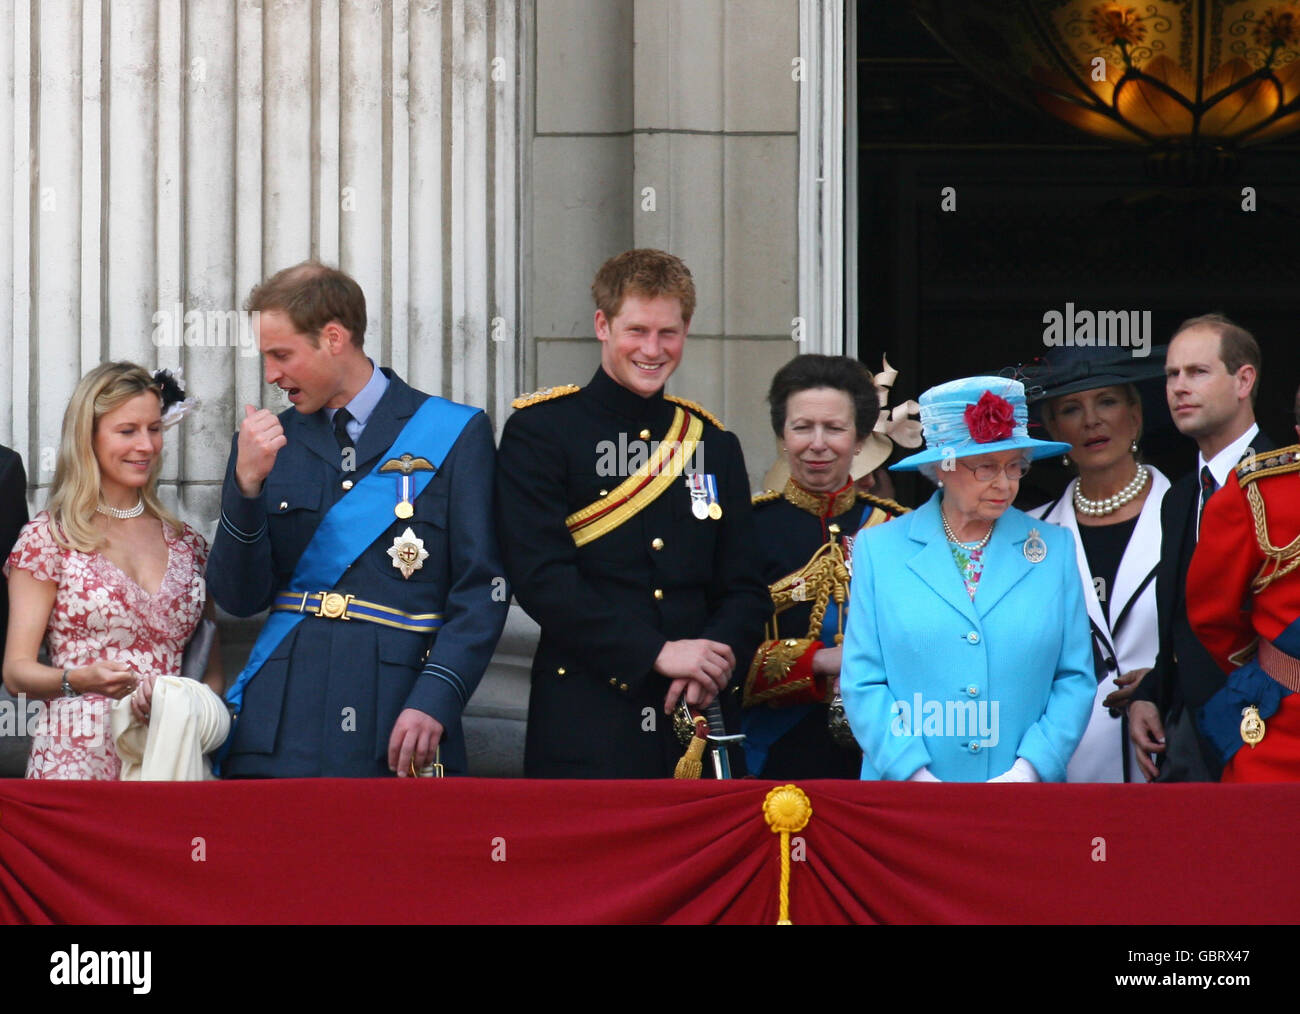 Da sinistra a destra, il Principe William, il Principe Harry, la Principessa reale, la Regina Elisabetta II e il Conte di Wessex guardano un cavalcavia dal balcone di Buckingham Palace a Londra alla conclusione dell'annuale Trooping the Color. Foto Stock